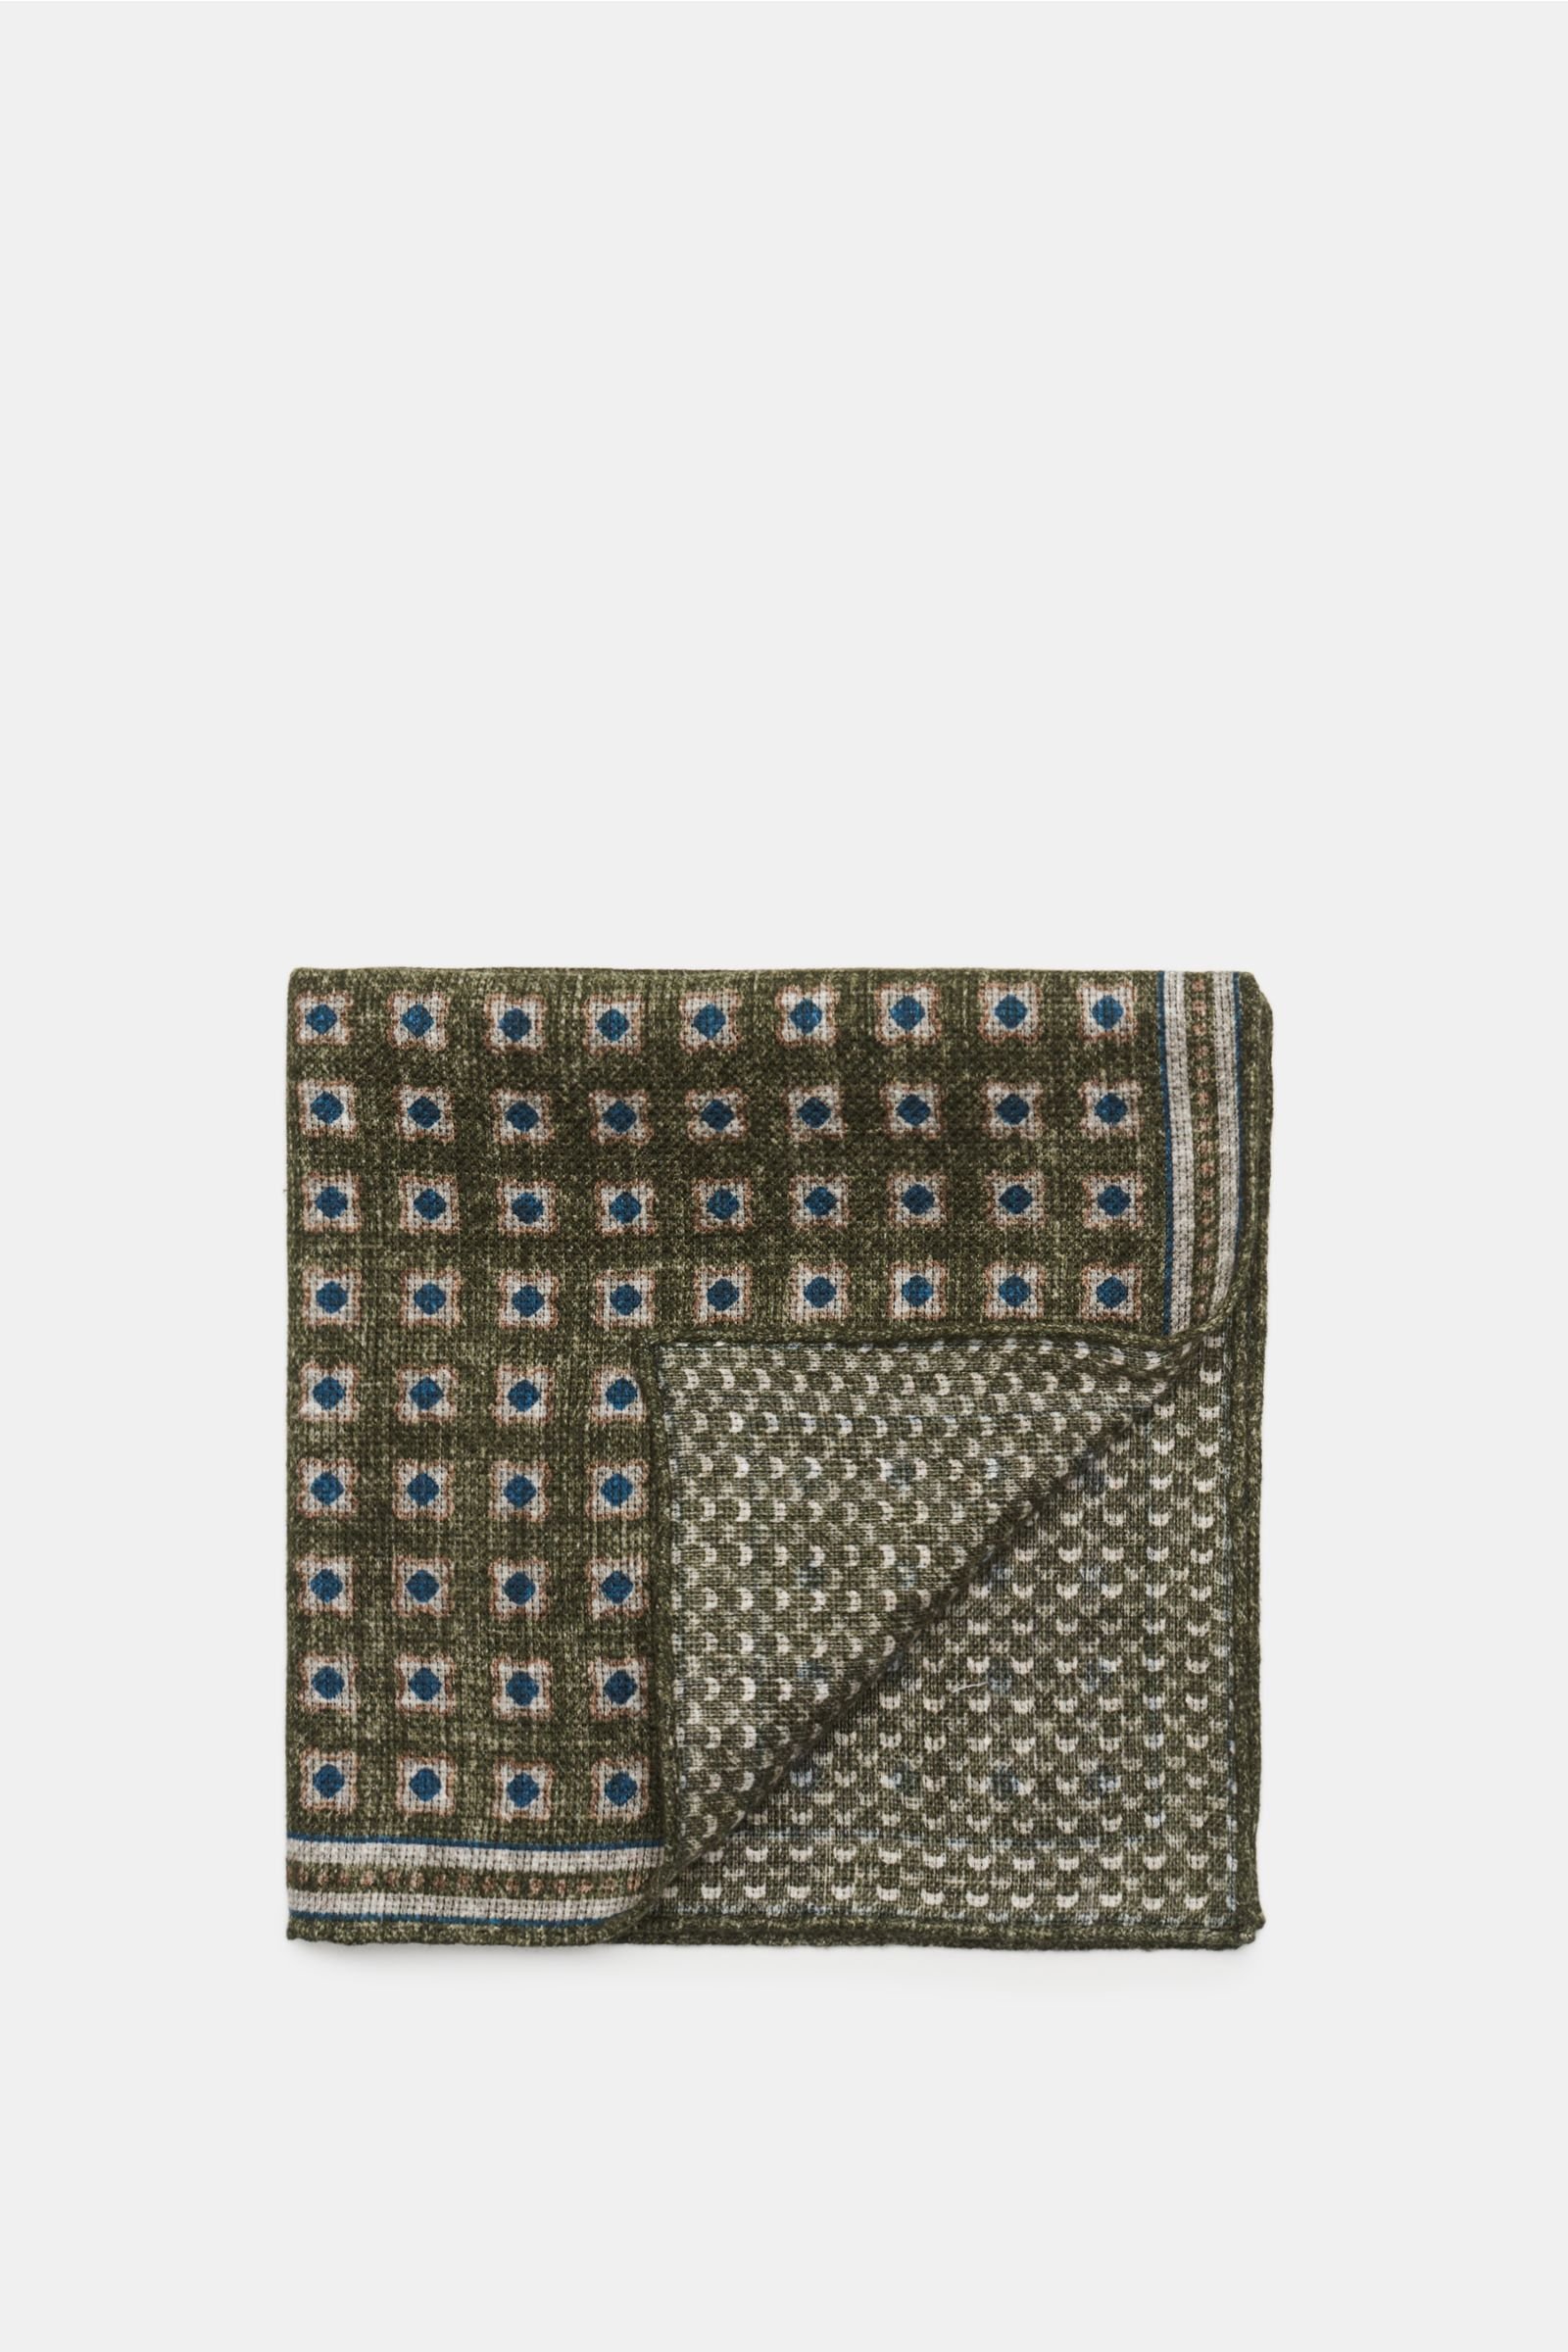 Pocket square olive/navy patterned